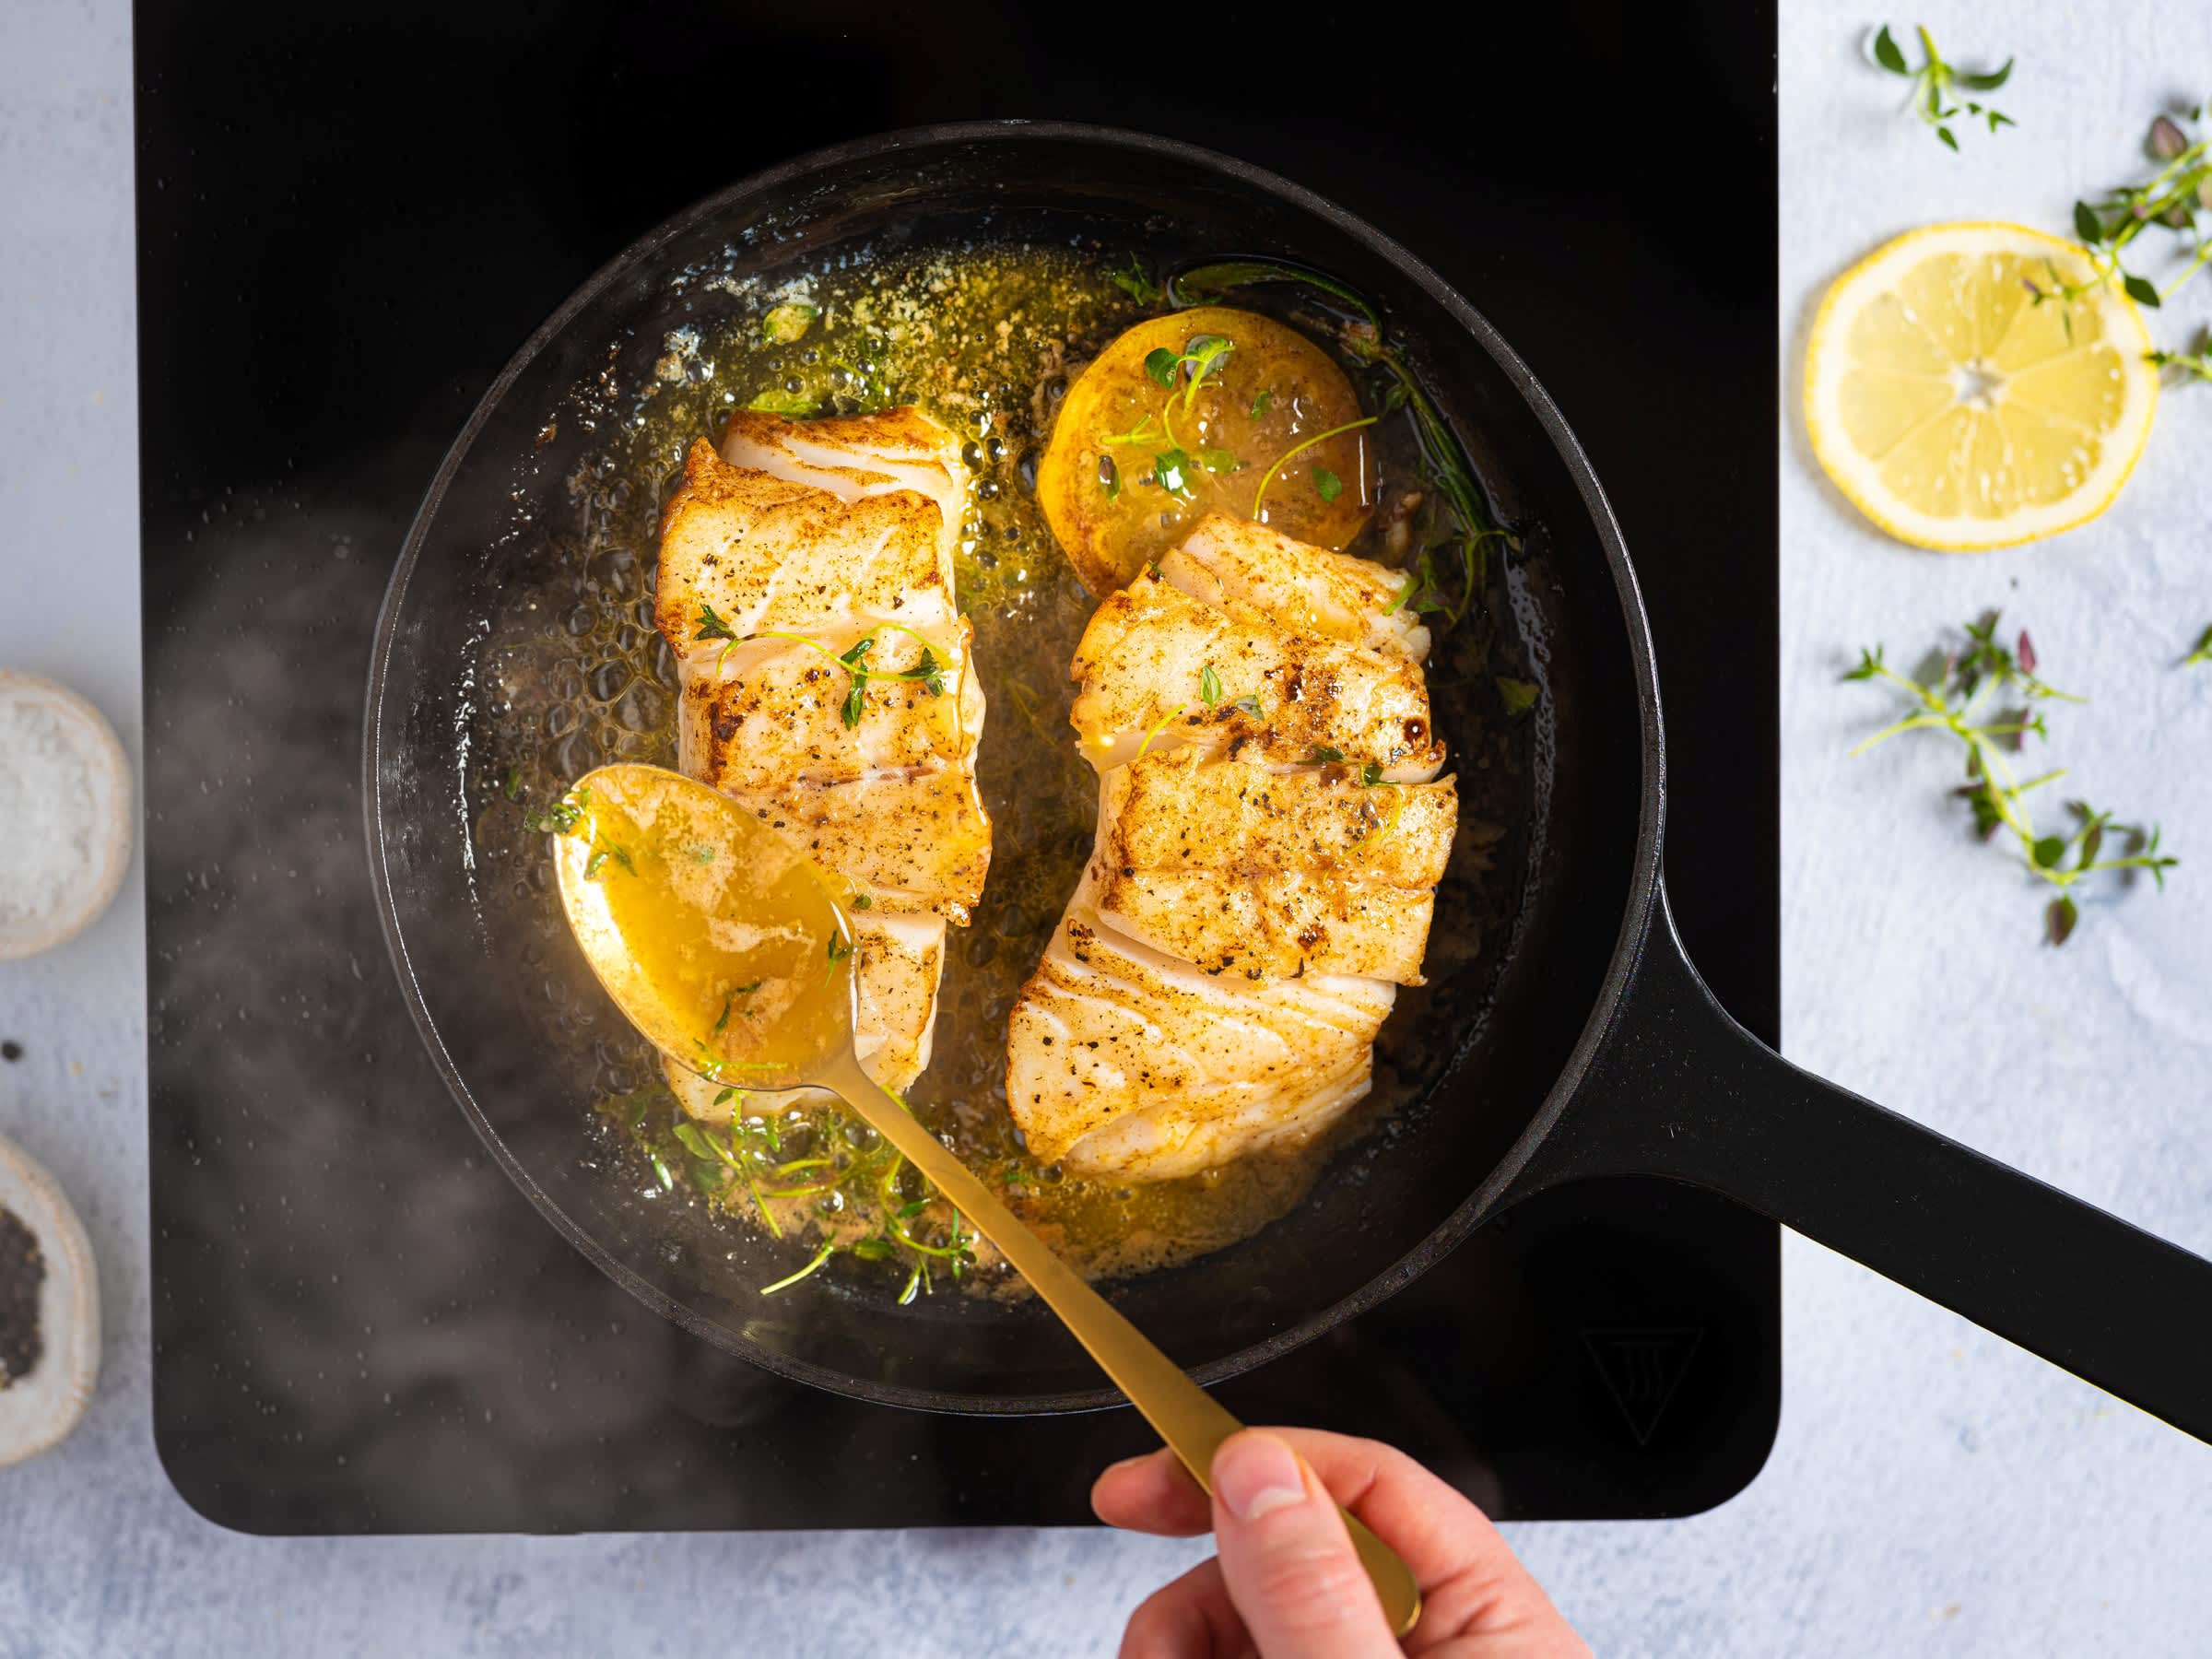 Slik tilbereder du fisk | Steke, koke og ovnsbake | Meny.no